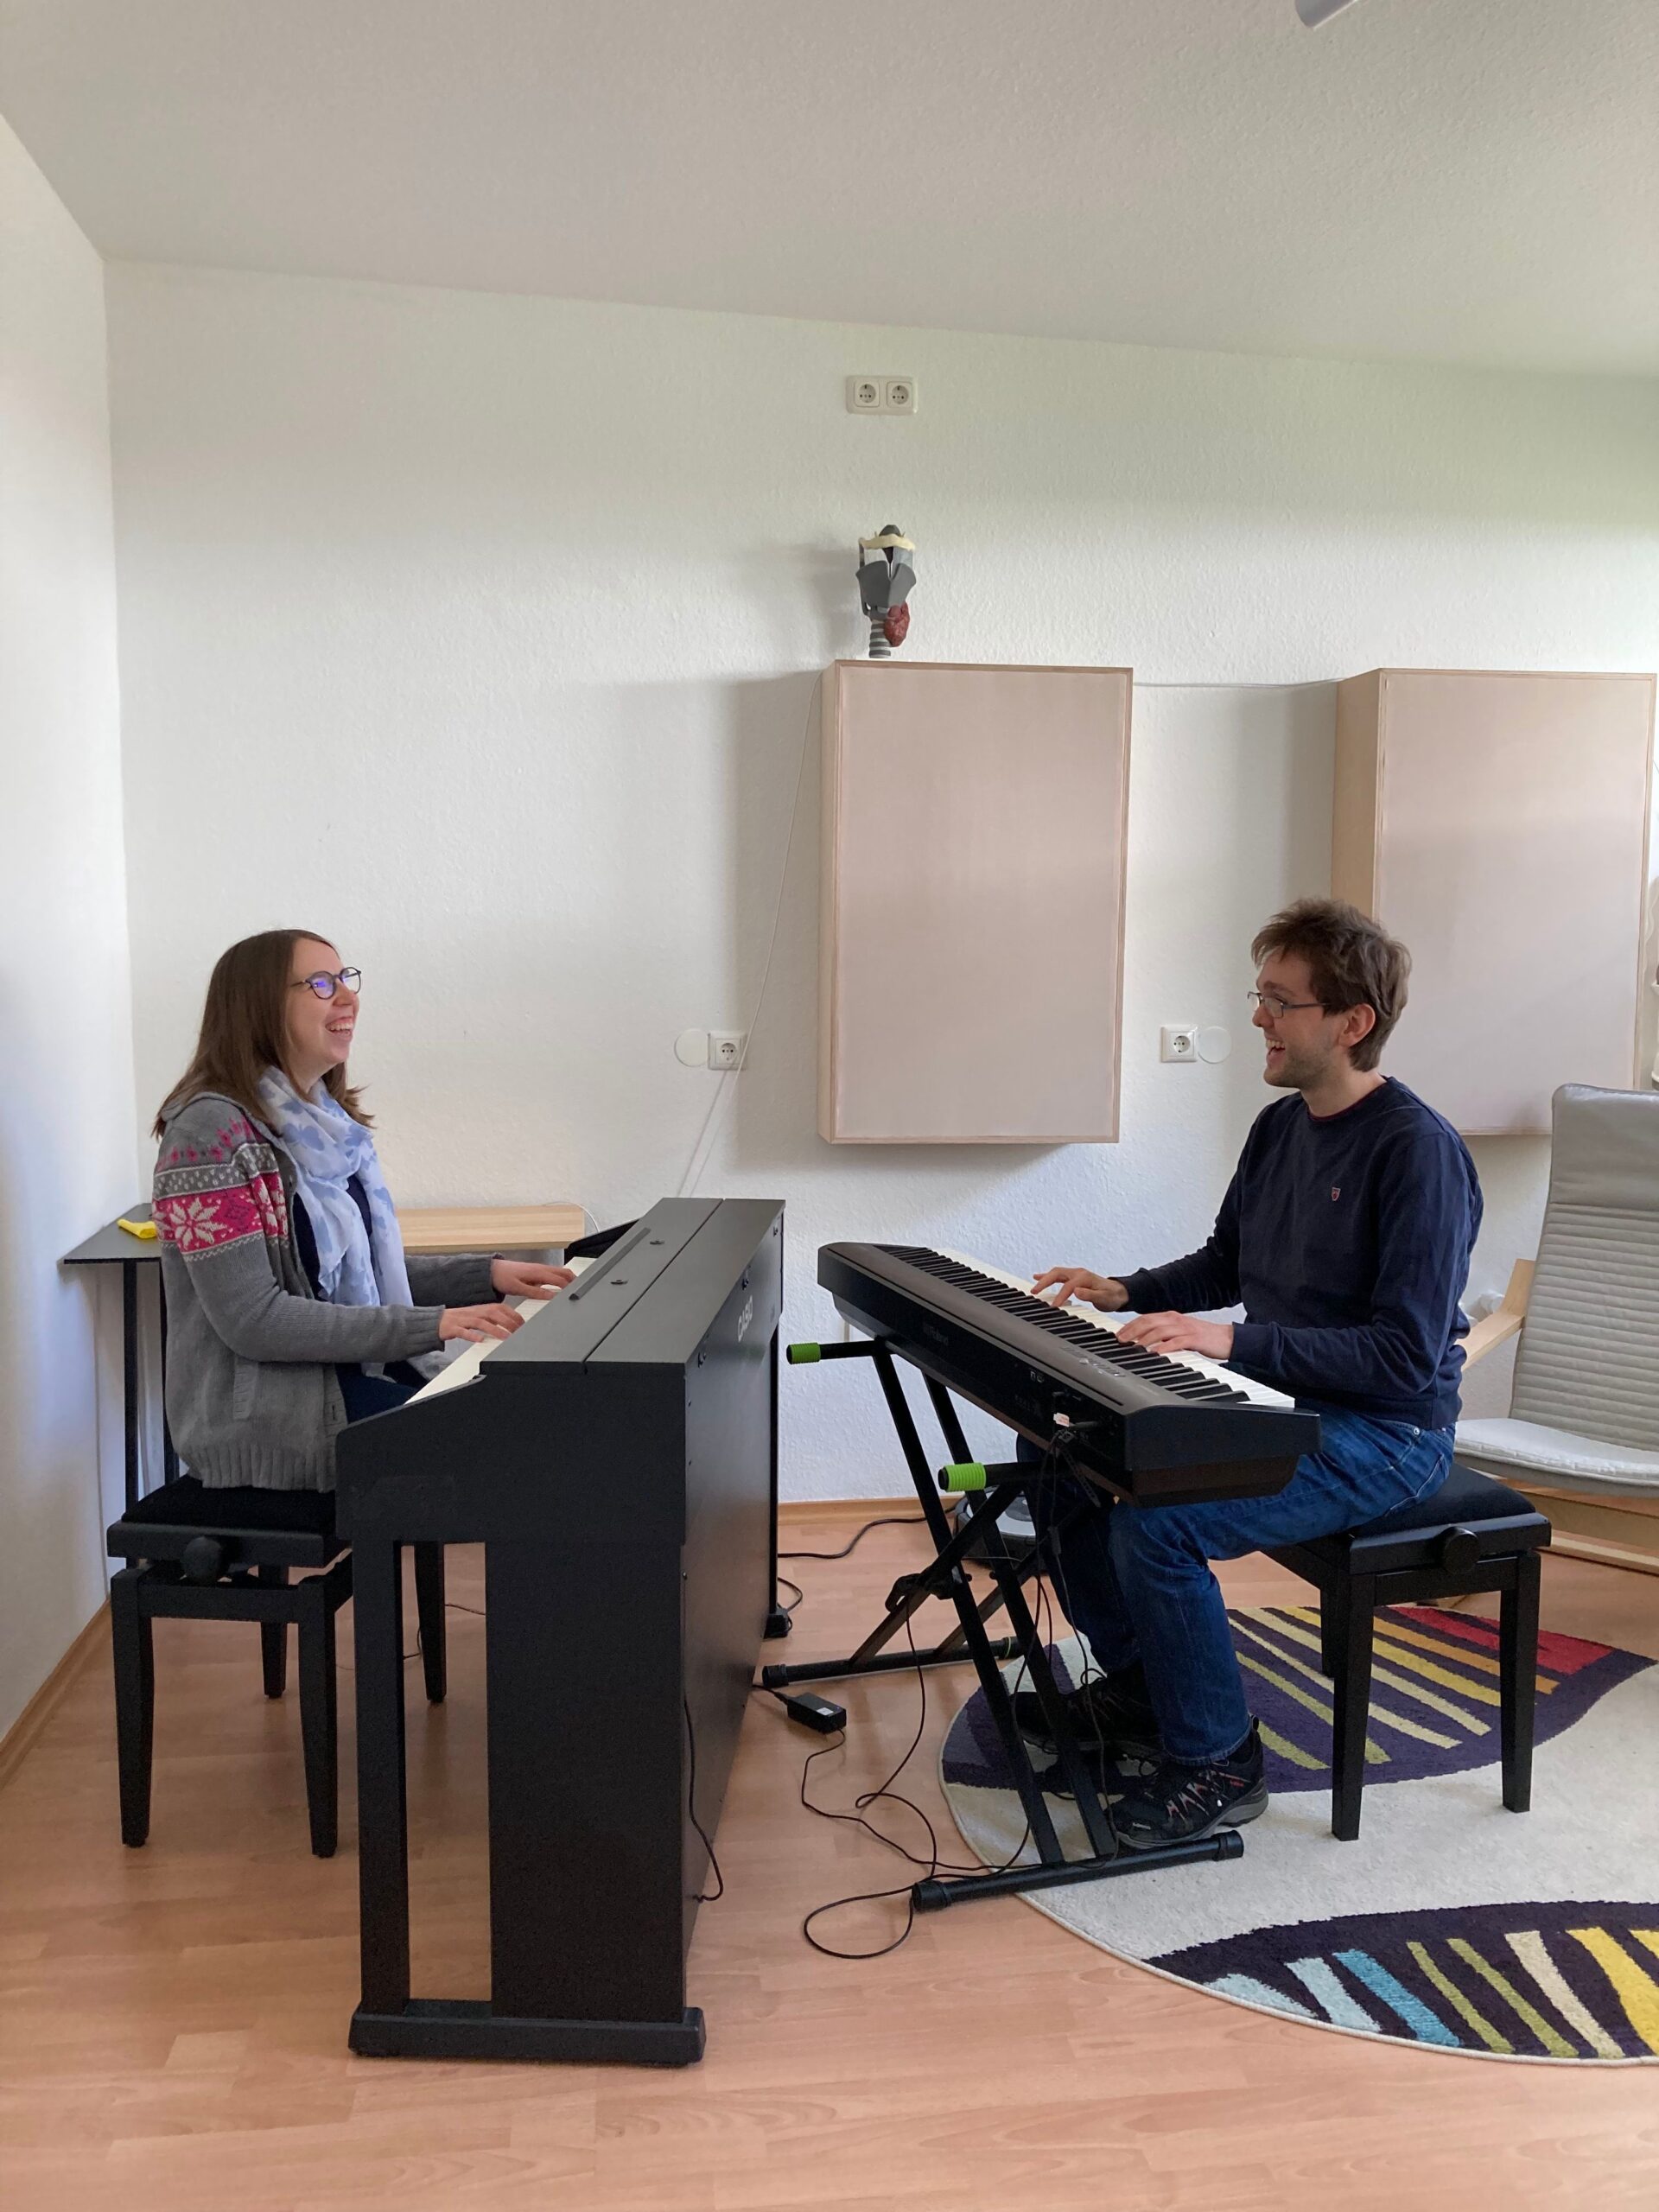 Lorena Dürnholz und Philipp Jeschke bei den Proben von "Flower is Chocolate", jeweils an einem Digitalpiano sitzend